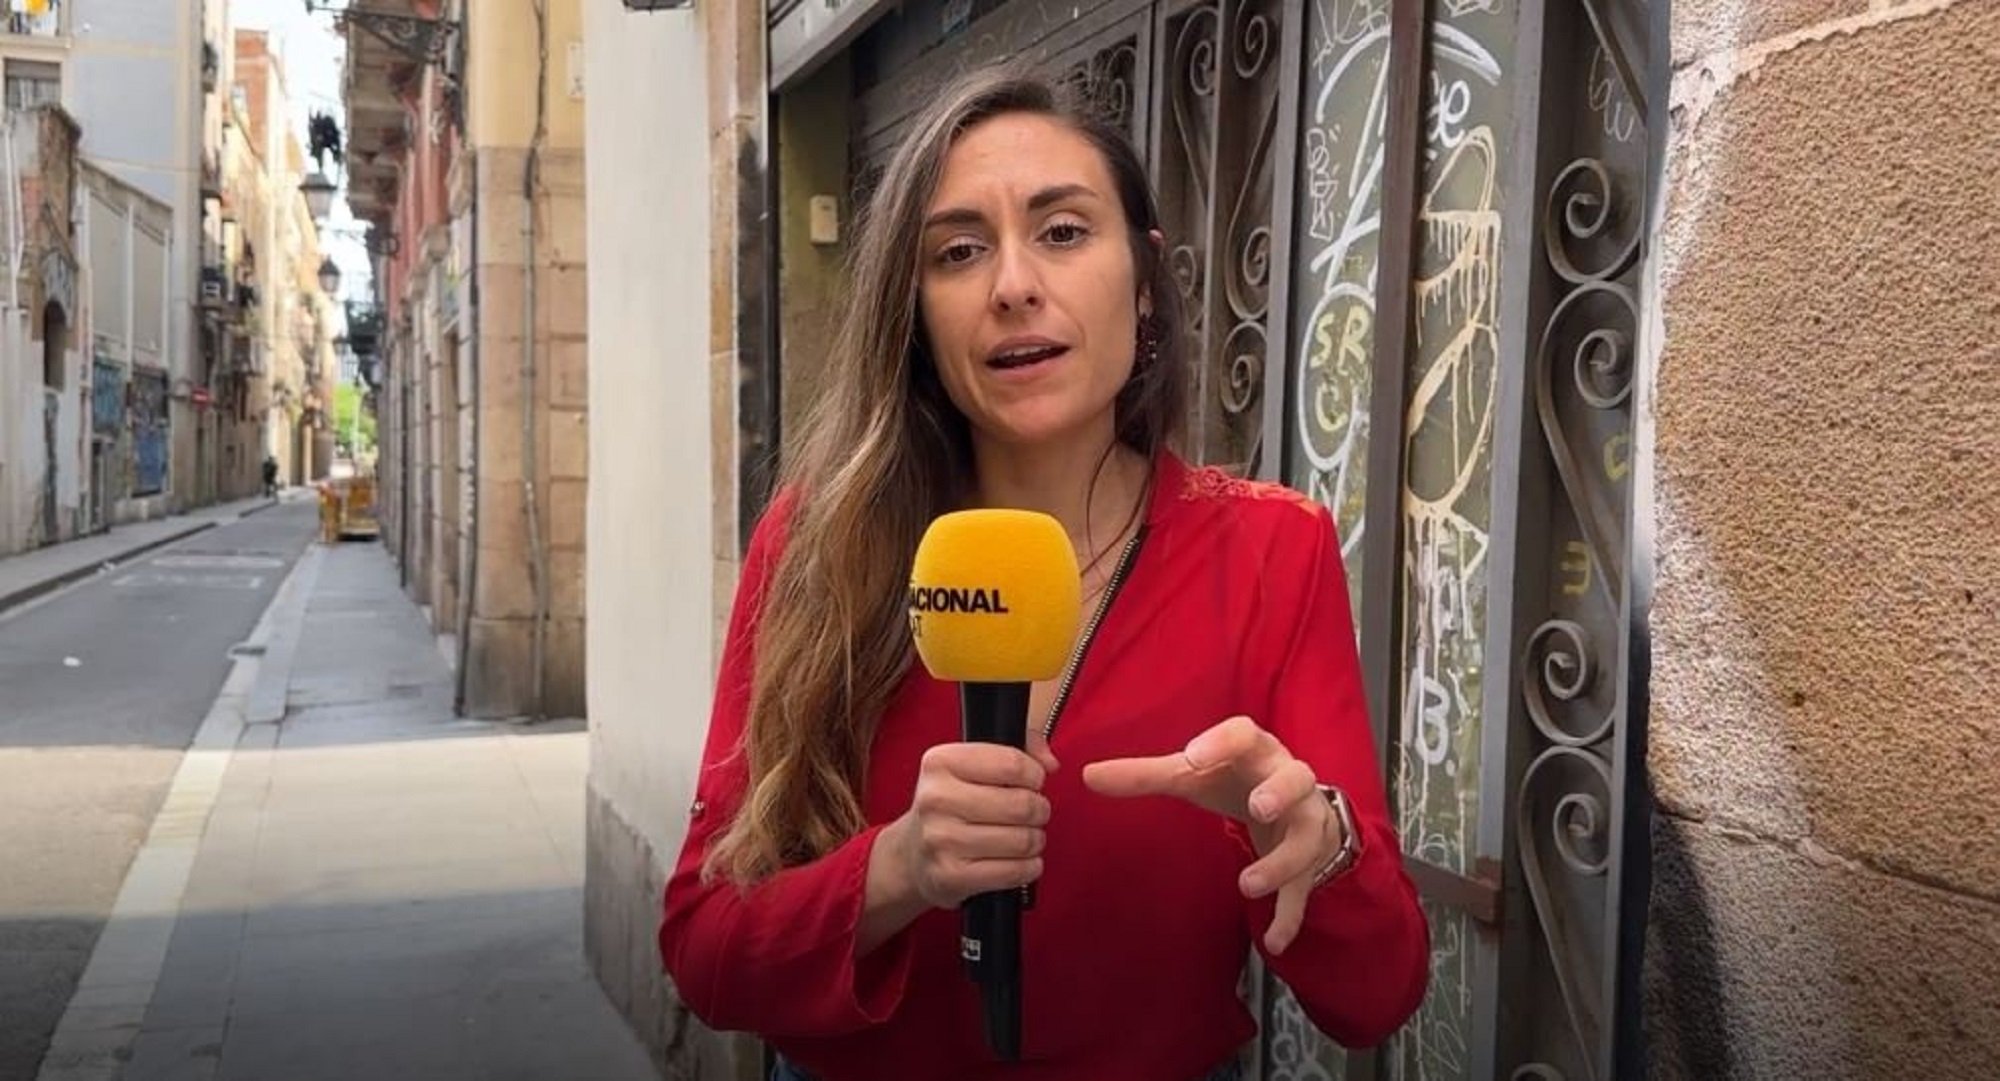 Veïns atemorits per la inseguretat a Barcelona: "Aquí roben dia sí i dia també" | VÍDEO